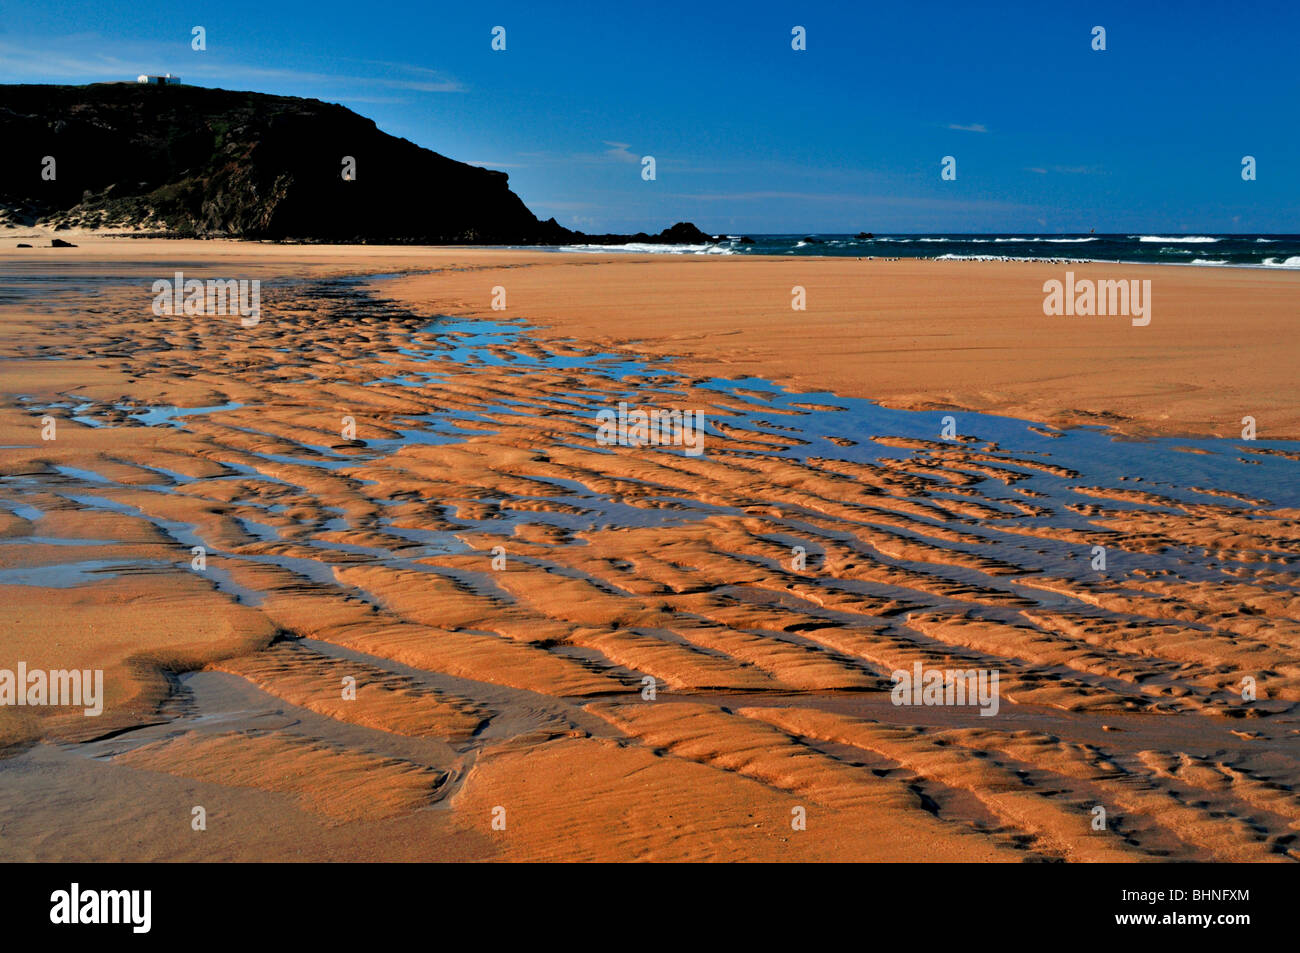 Portugal, Algarve: Ebbe am Strand von Amado Stockfoto